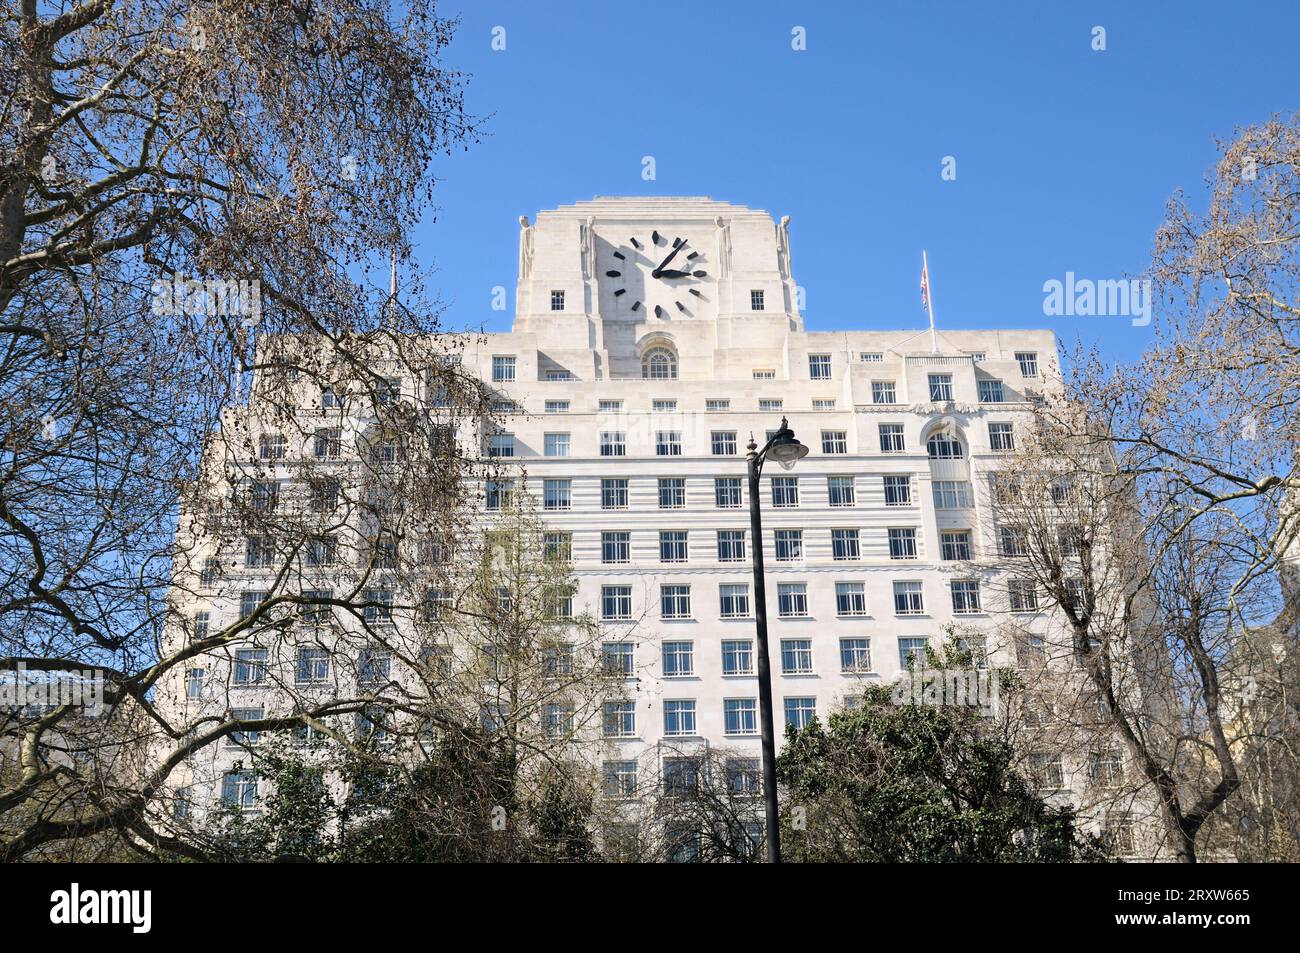 Das Shell Mex House, offiziell bekannt als 80 Strand. London, England. Art déco-Gebäude mit der größten Uhr in Großbritannien. Baujahr 1930-1931. Stockfoto